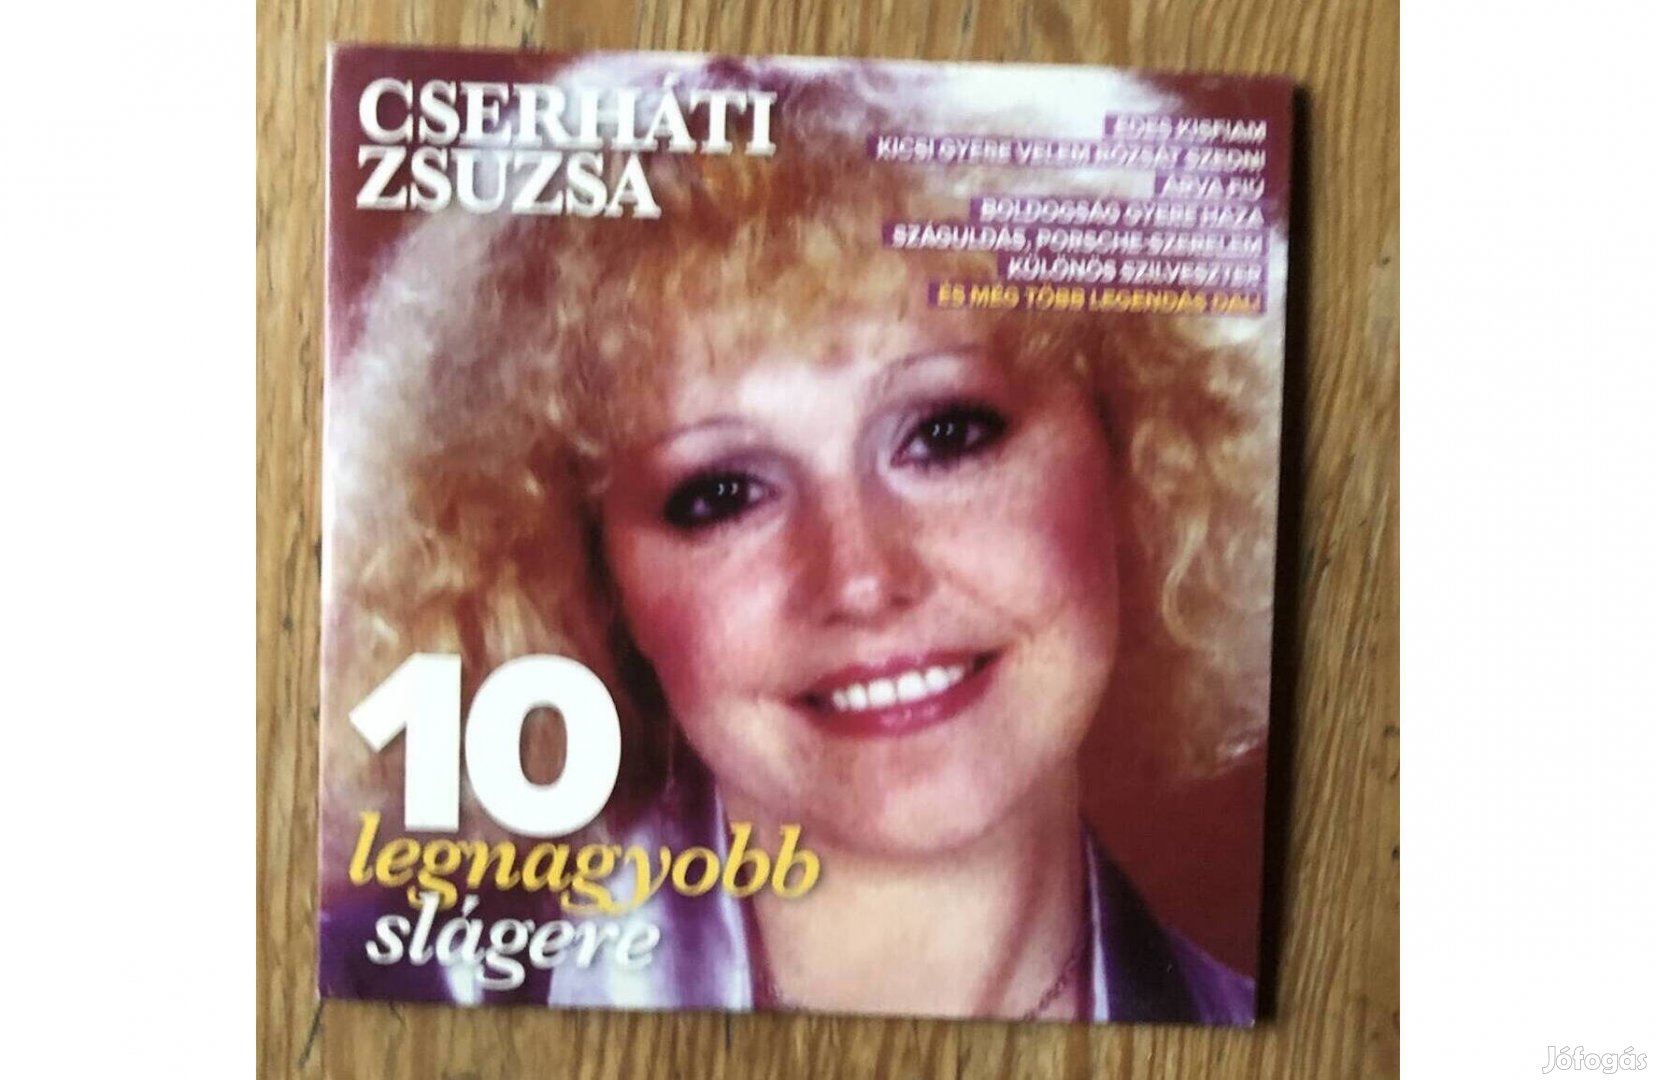 Cserháti Zsuzsa 10 legnagyobb slágere CD,papirtokos 2500 Ft :Lenti